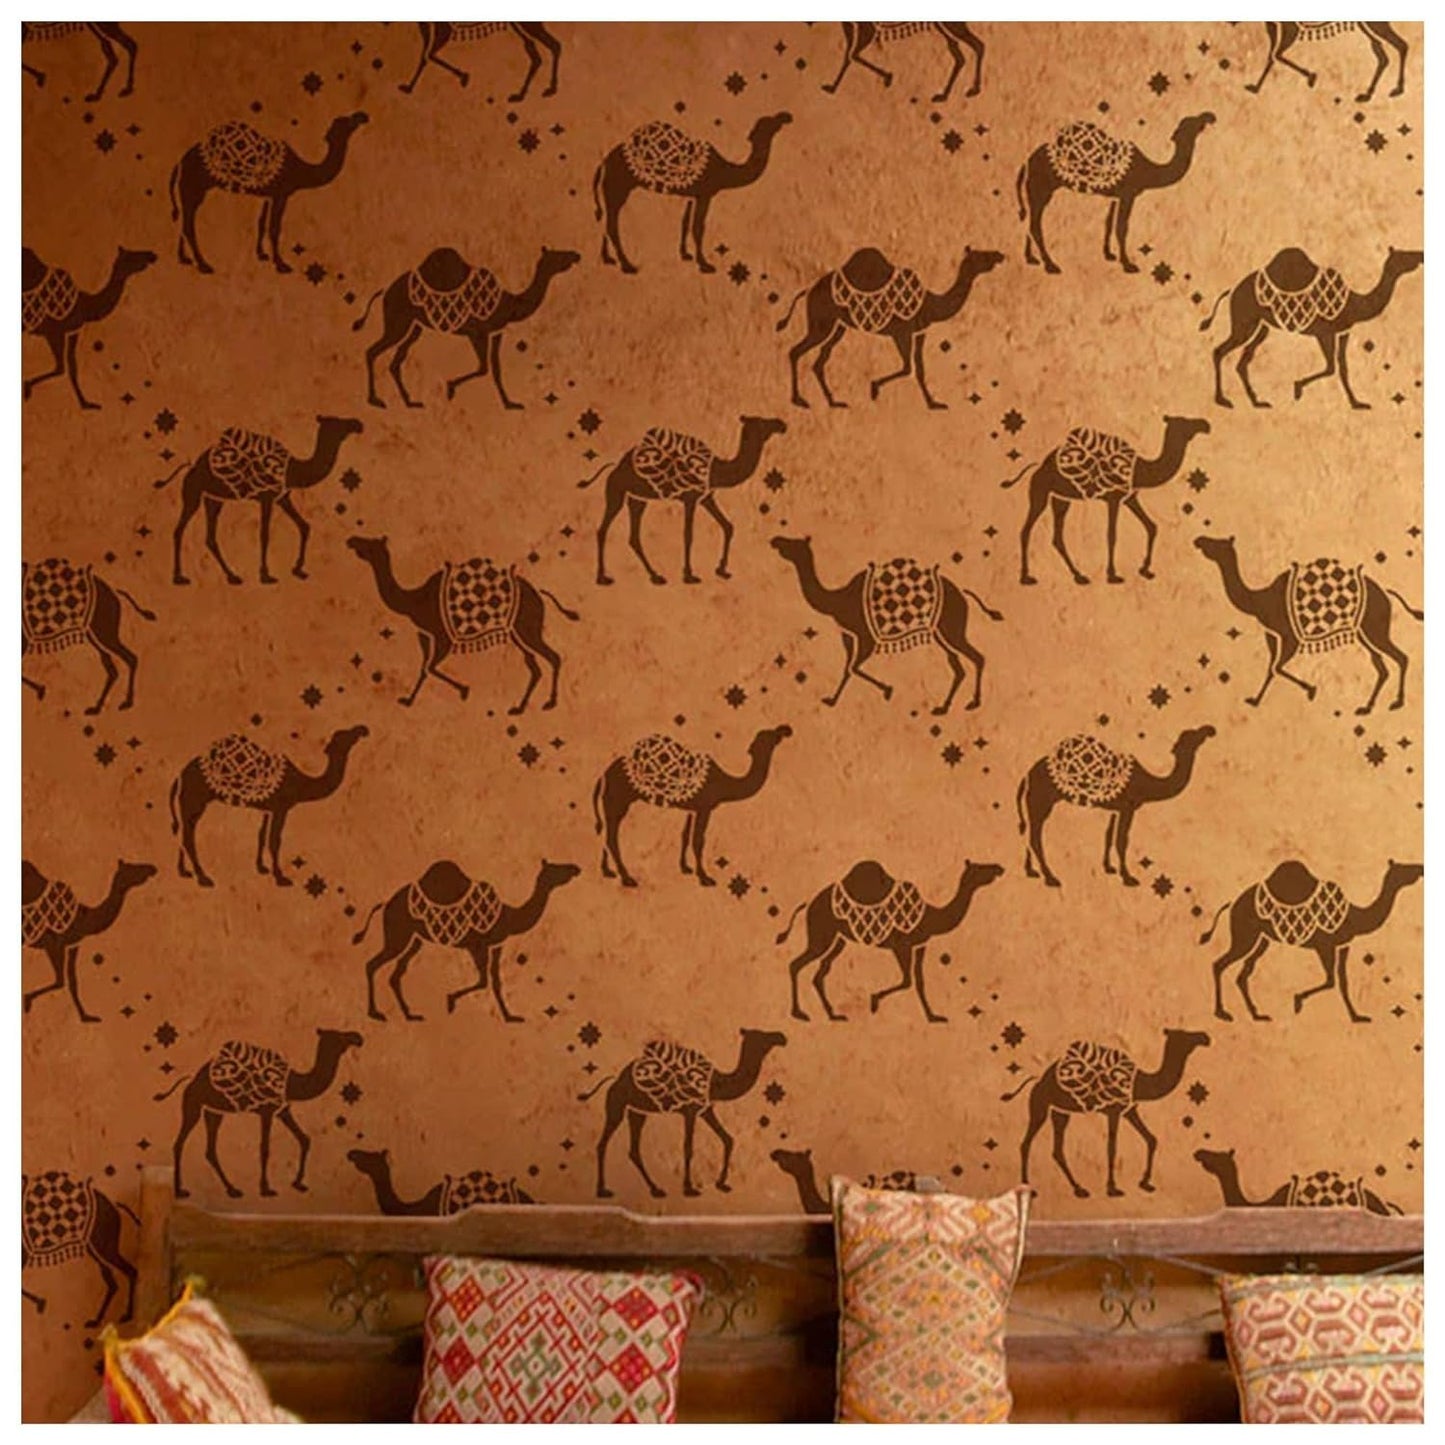 Latest Large Camel Safari Wall Stencil (KDRDSS1221-2436)